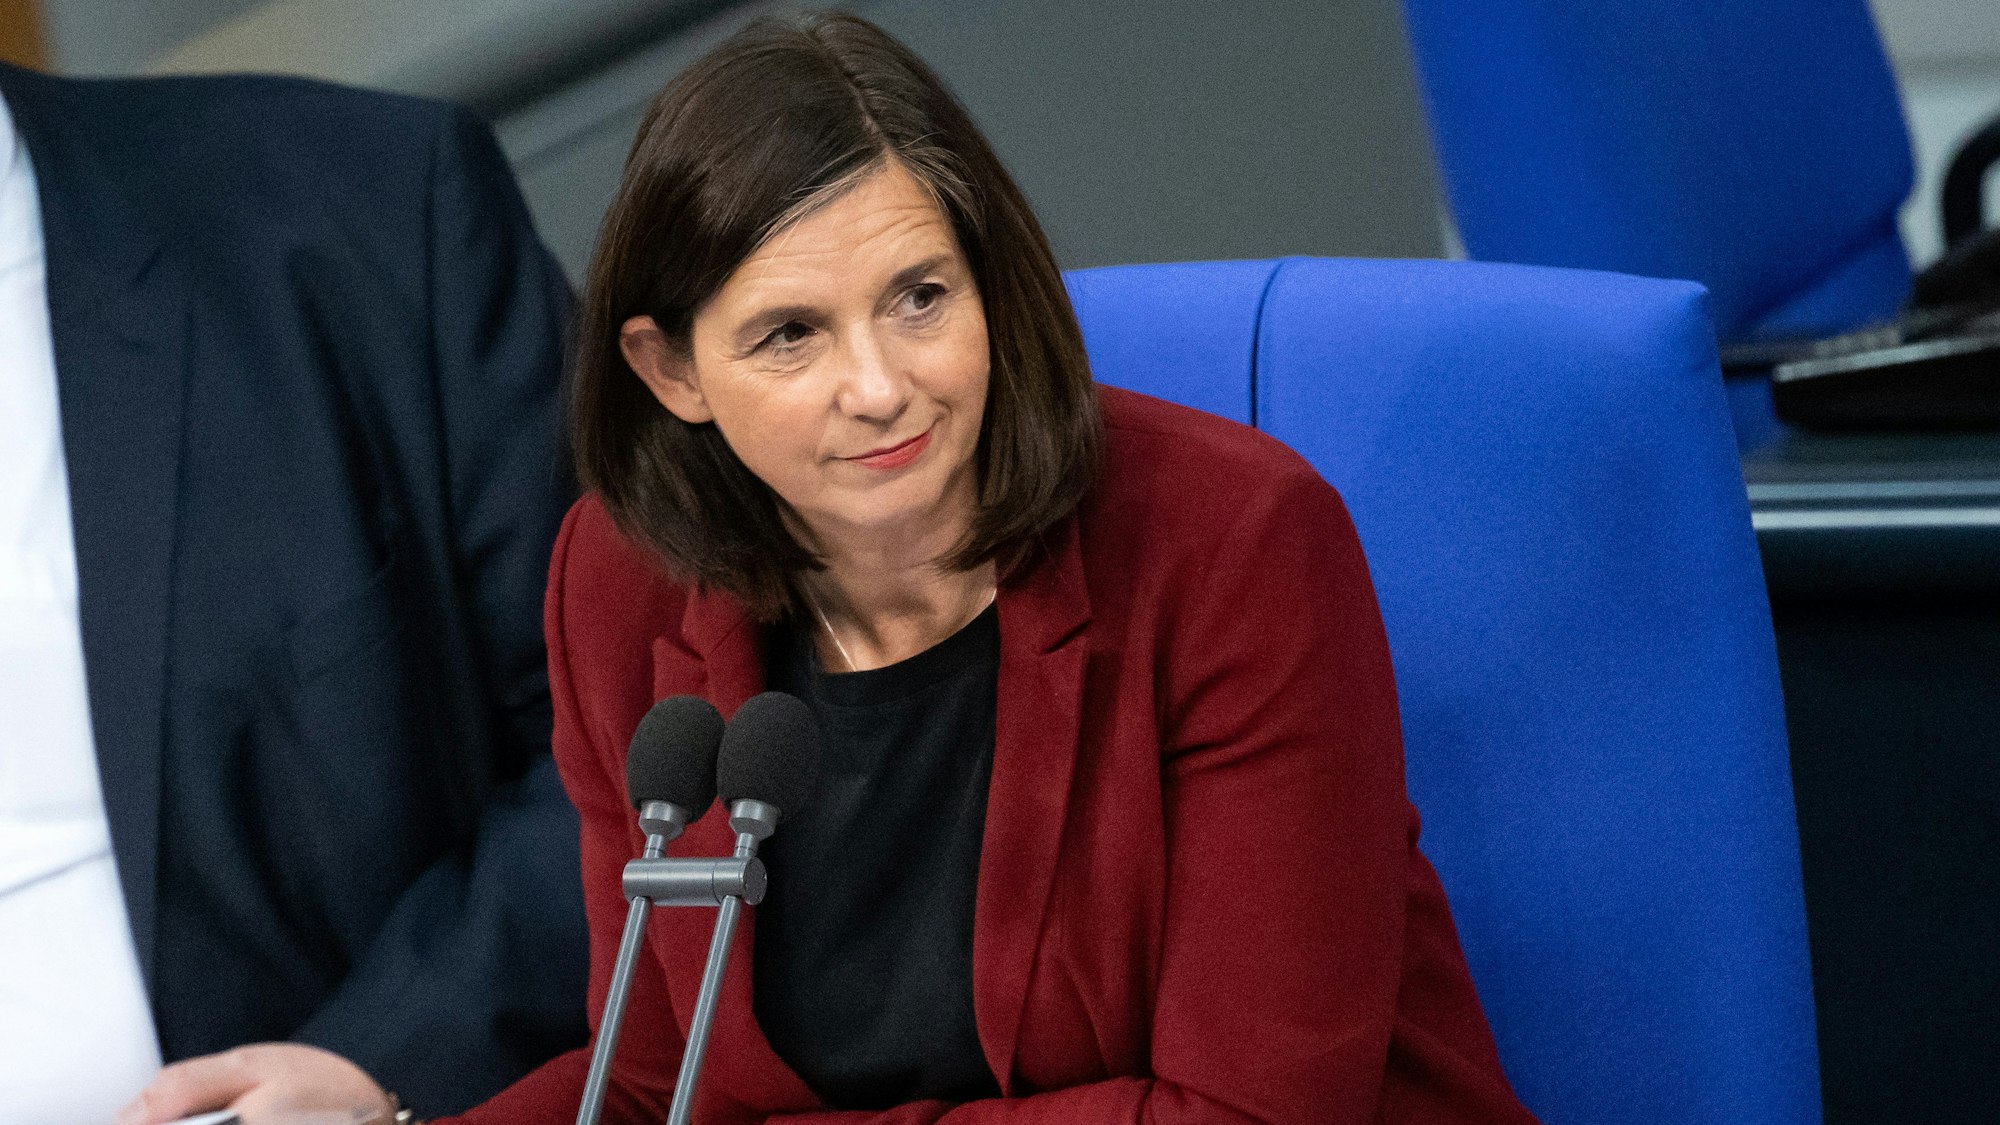 Katrin Göring-Eckardt (Bündnis 90/Die Grünen) ist stellvertretende Bundestagspräsidentin. Sie sitzt in einem blauen Sessel im Bundestag hinter einem Mikrofon.